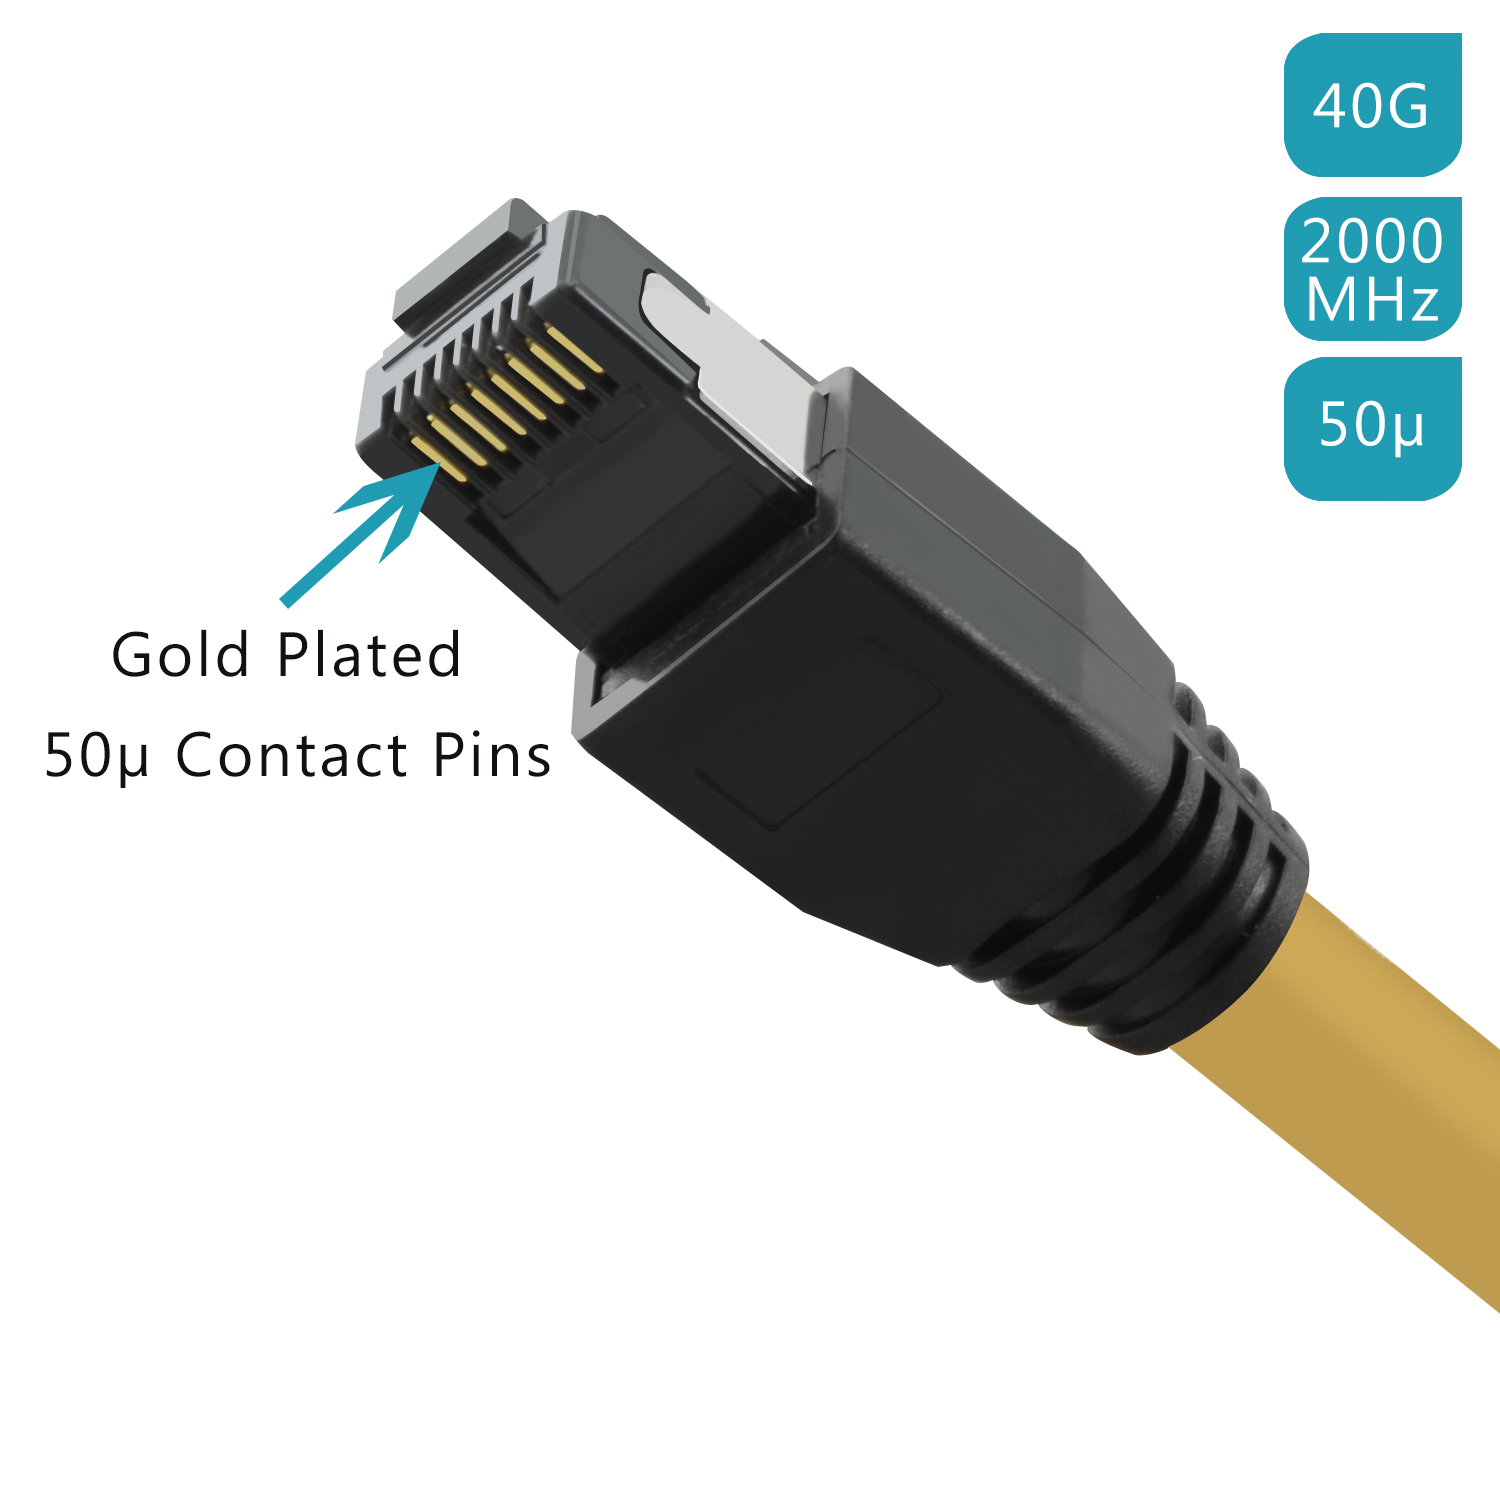 TPFNET 0,25m Patchkabel / Netzwerkkabel gelb, Netzwerkkabel, 40 GBit, 0,25 m S/FTP